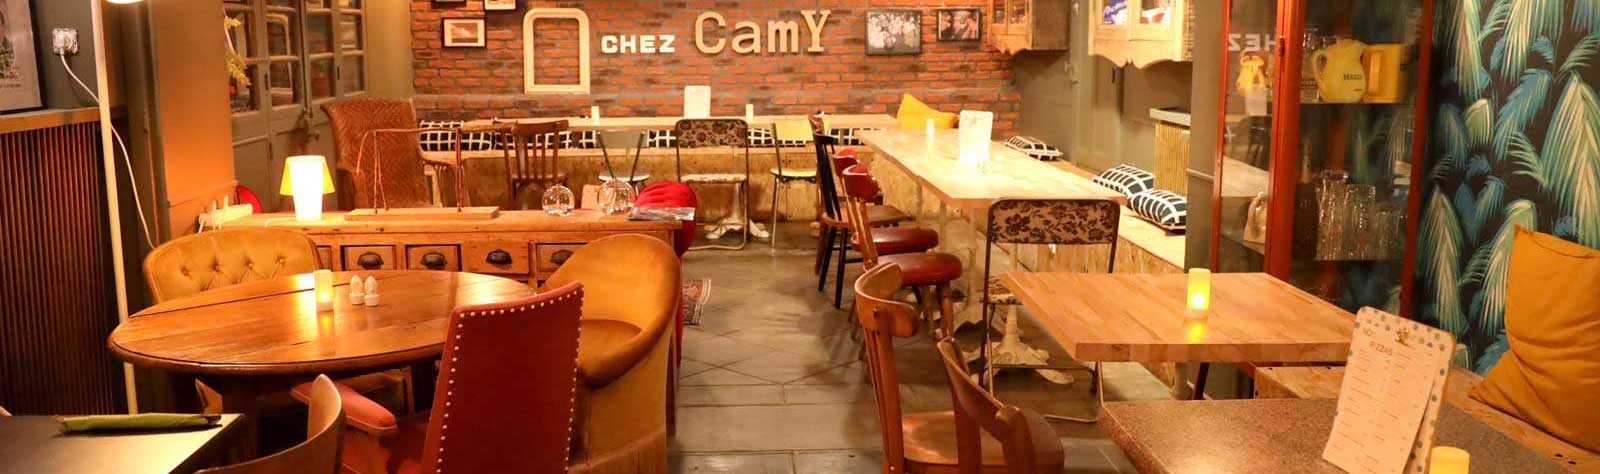 Chez Camy restaurant